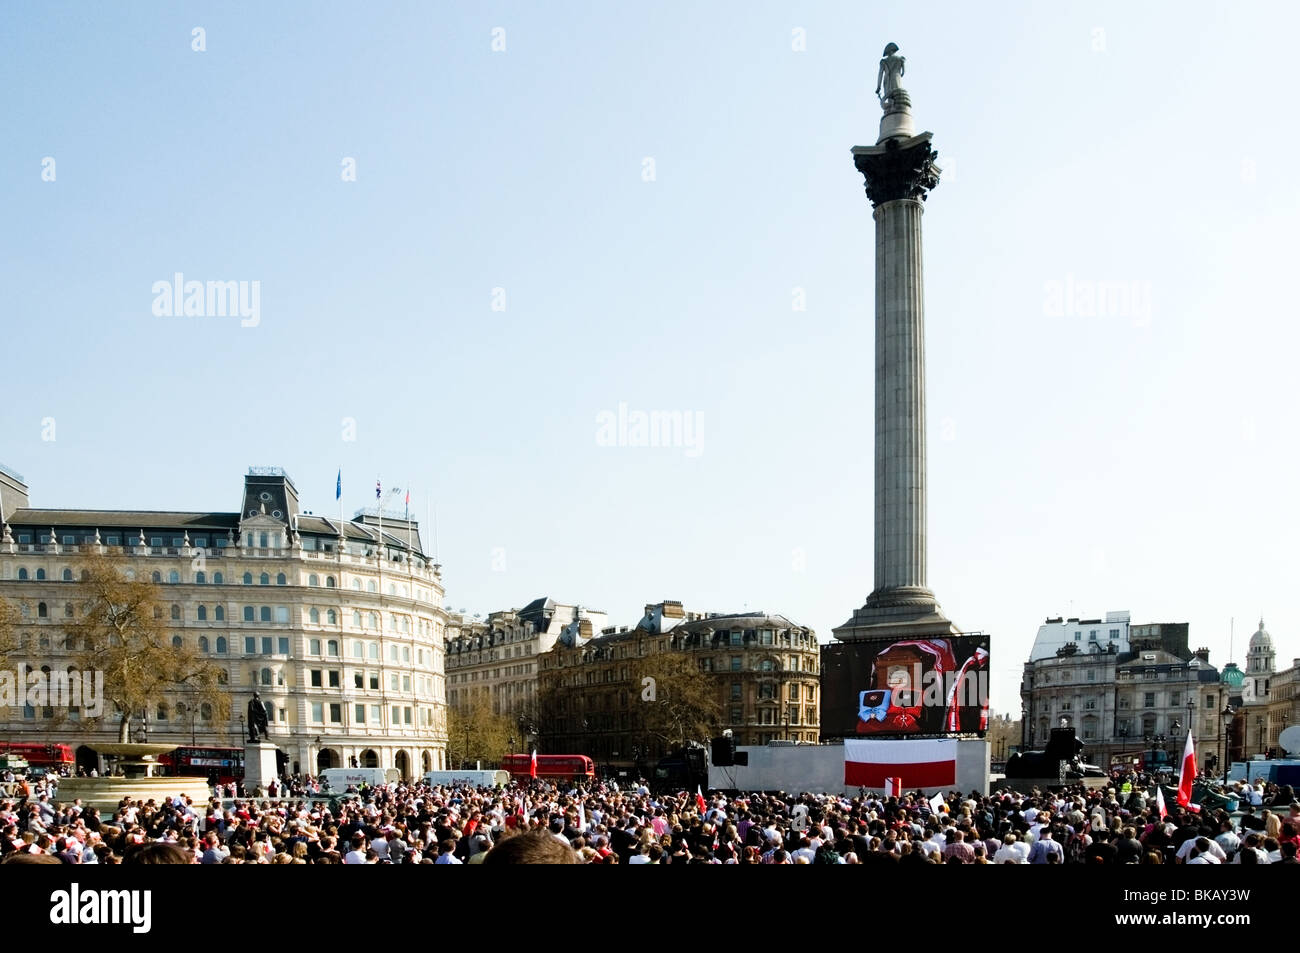 Vue large, Trafalgar Square et Nelsons Column architecture, Polish foule regardant la Radiodiffusion de Pologne, London, England, UK Banque D'Images